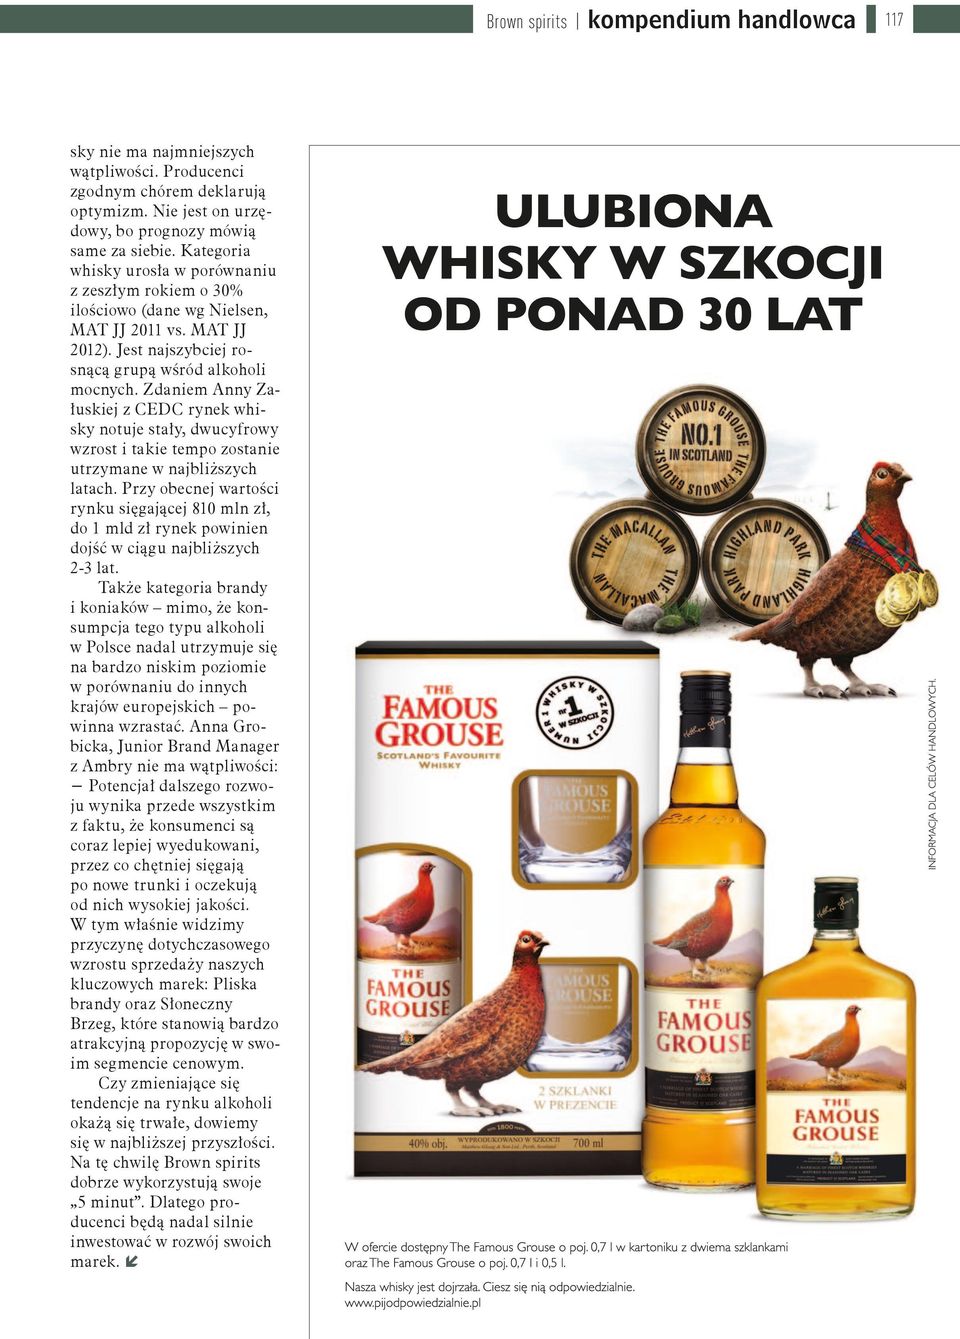 Zdaniem Anny Załuskiej z CEDC rynek whisky notuje stały, dwucyfrowy wzrost i takie tempo zostanie utrzymane w najbliższych latach.